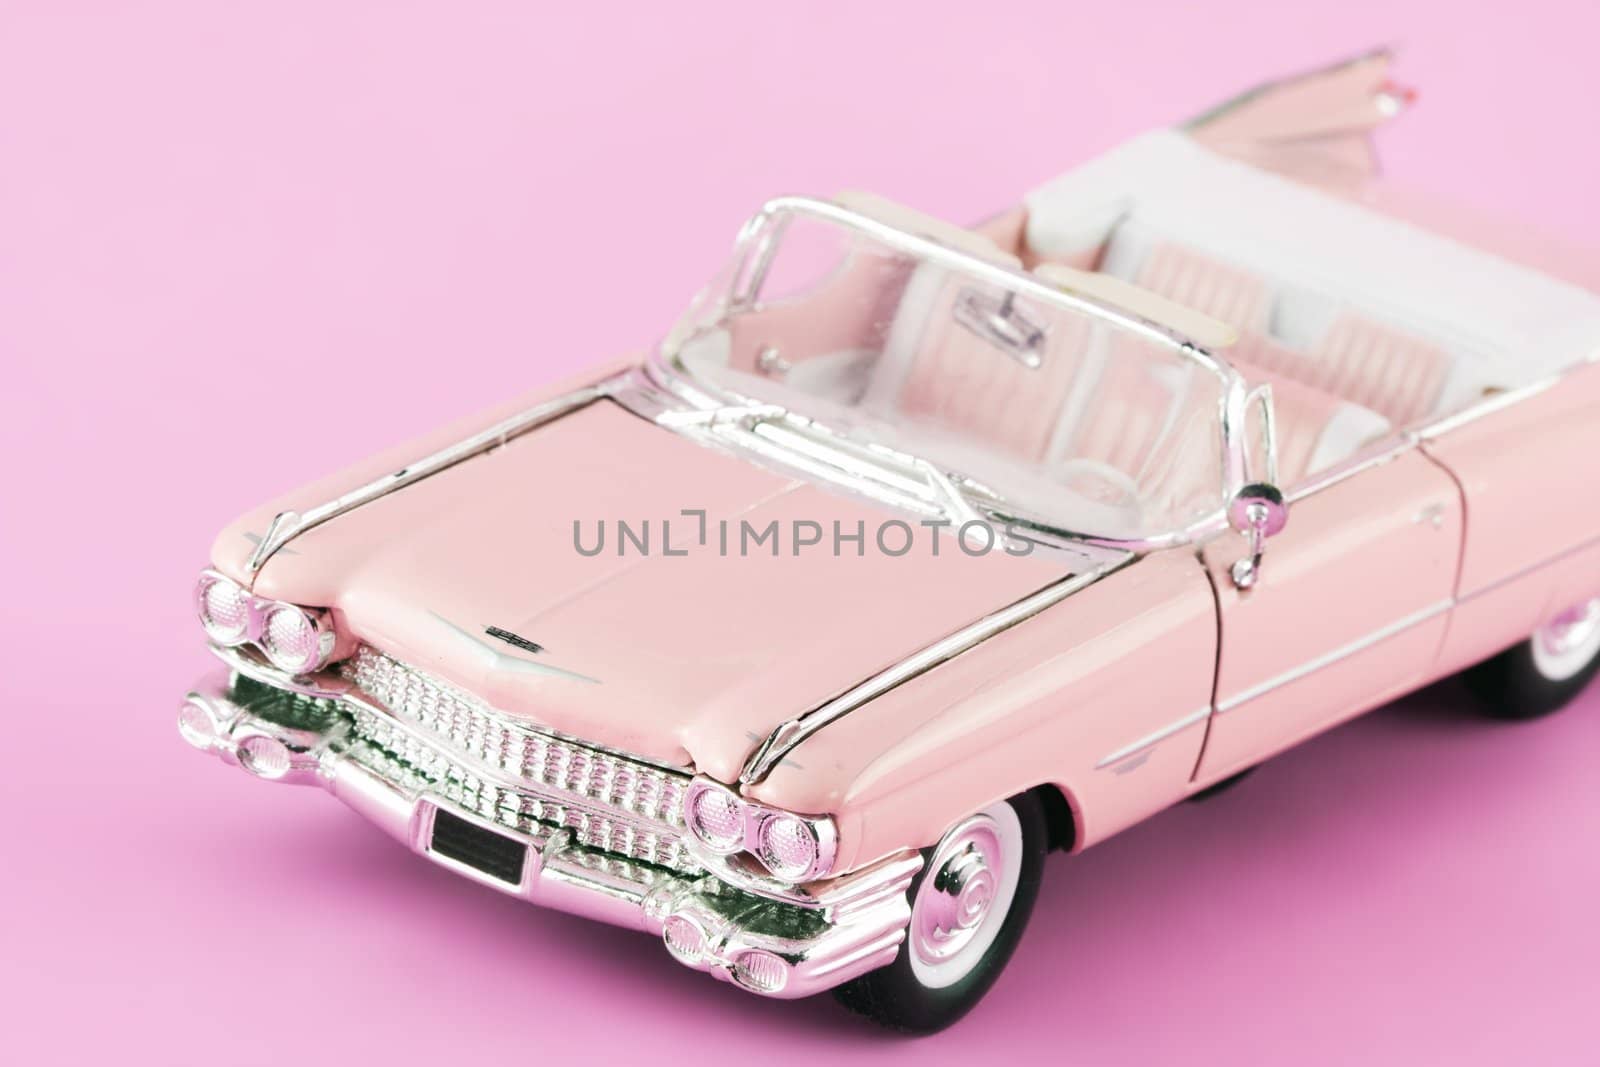 pink toy car